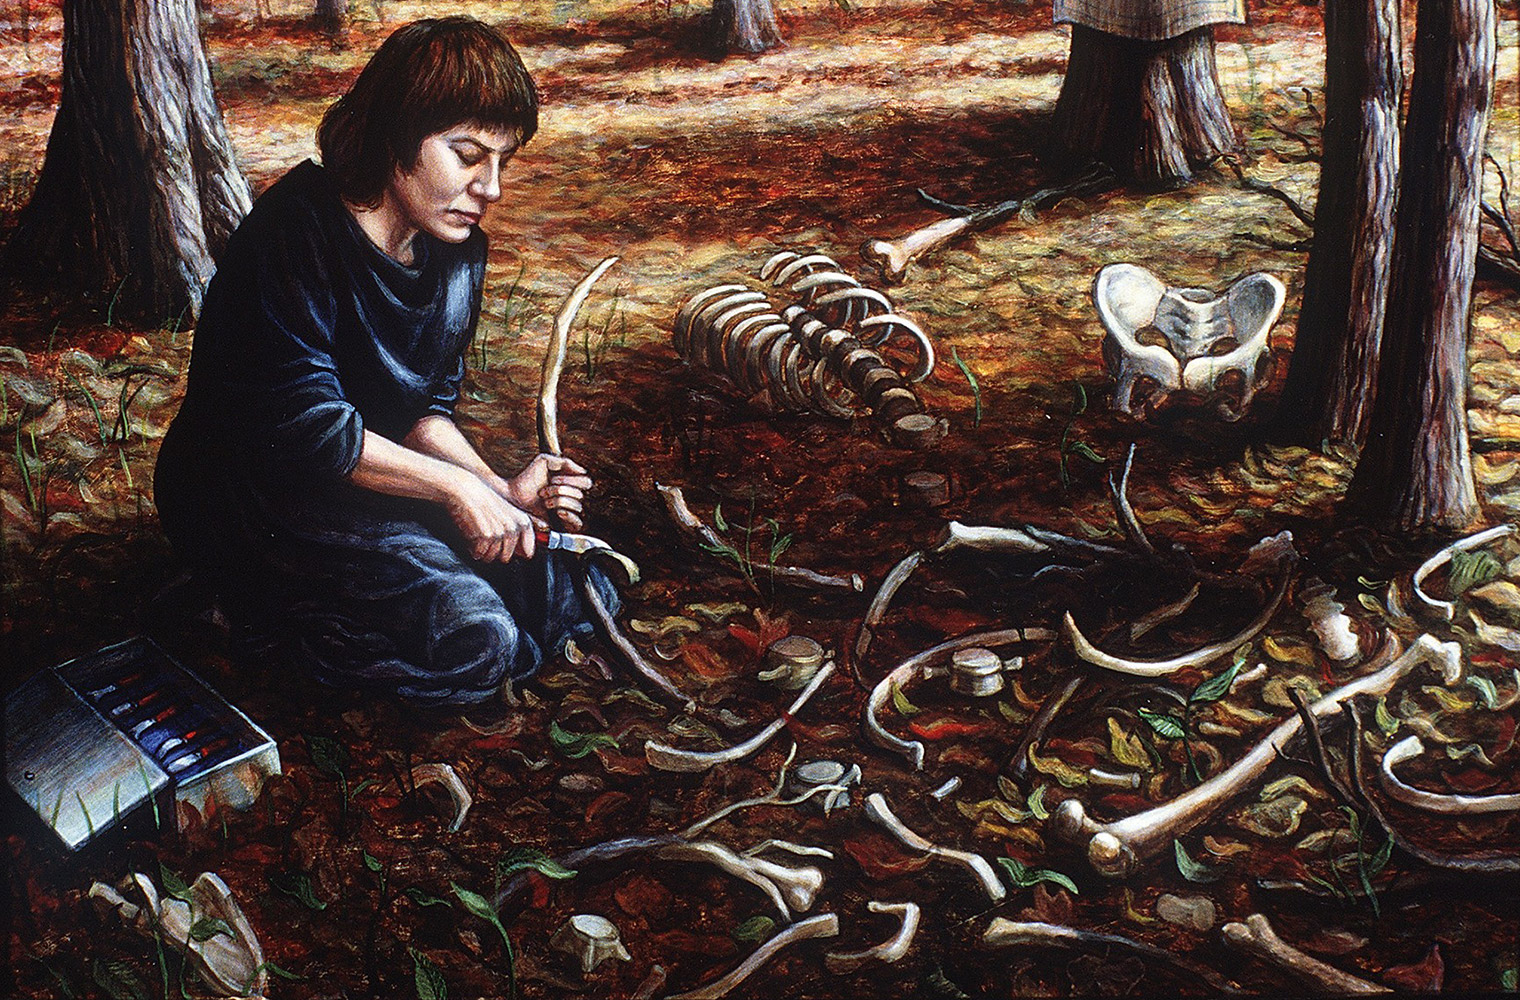 Im Selbstbildnis sitzt Riva Lehrer am Waldboden und schnitzt inmitten von Skelettteilen an einem Ast herum.